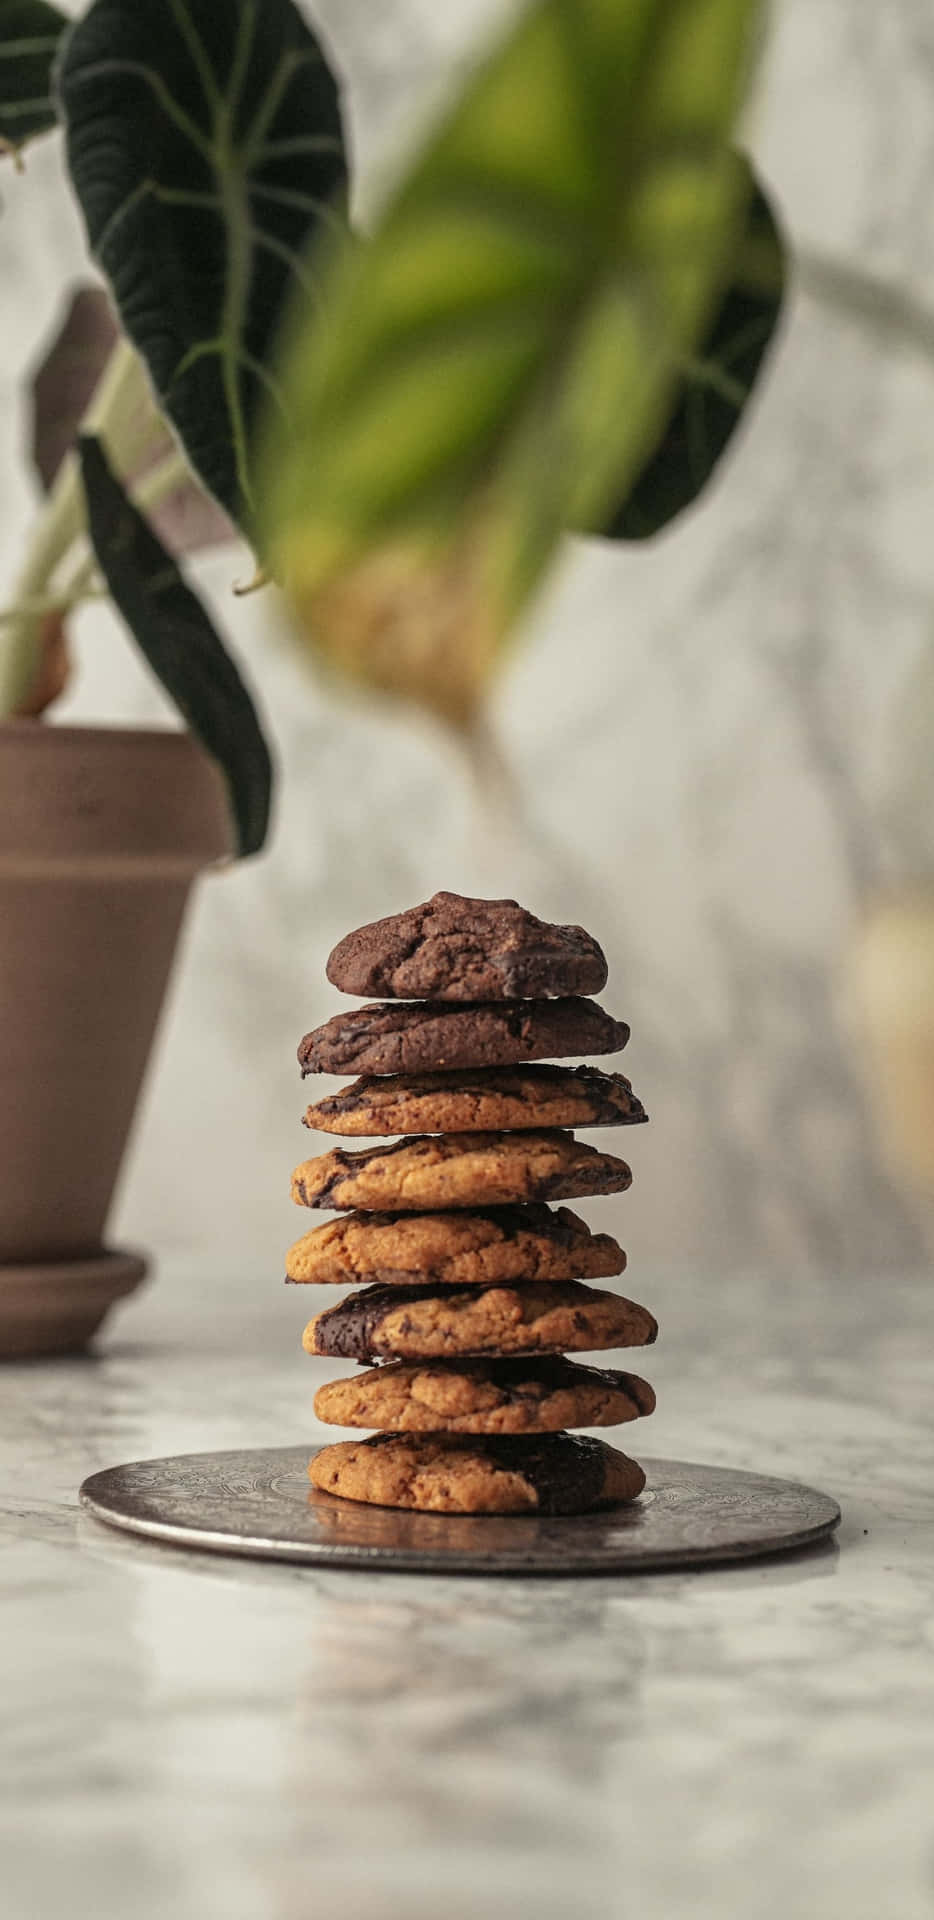 Food Design Pixel 3xl Cookies Background